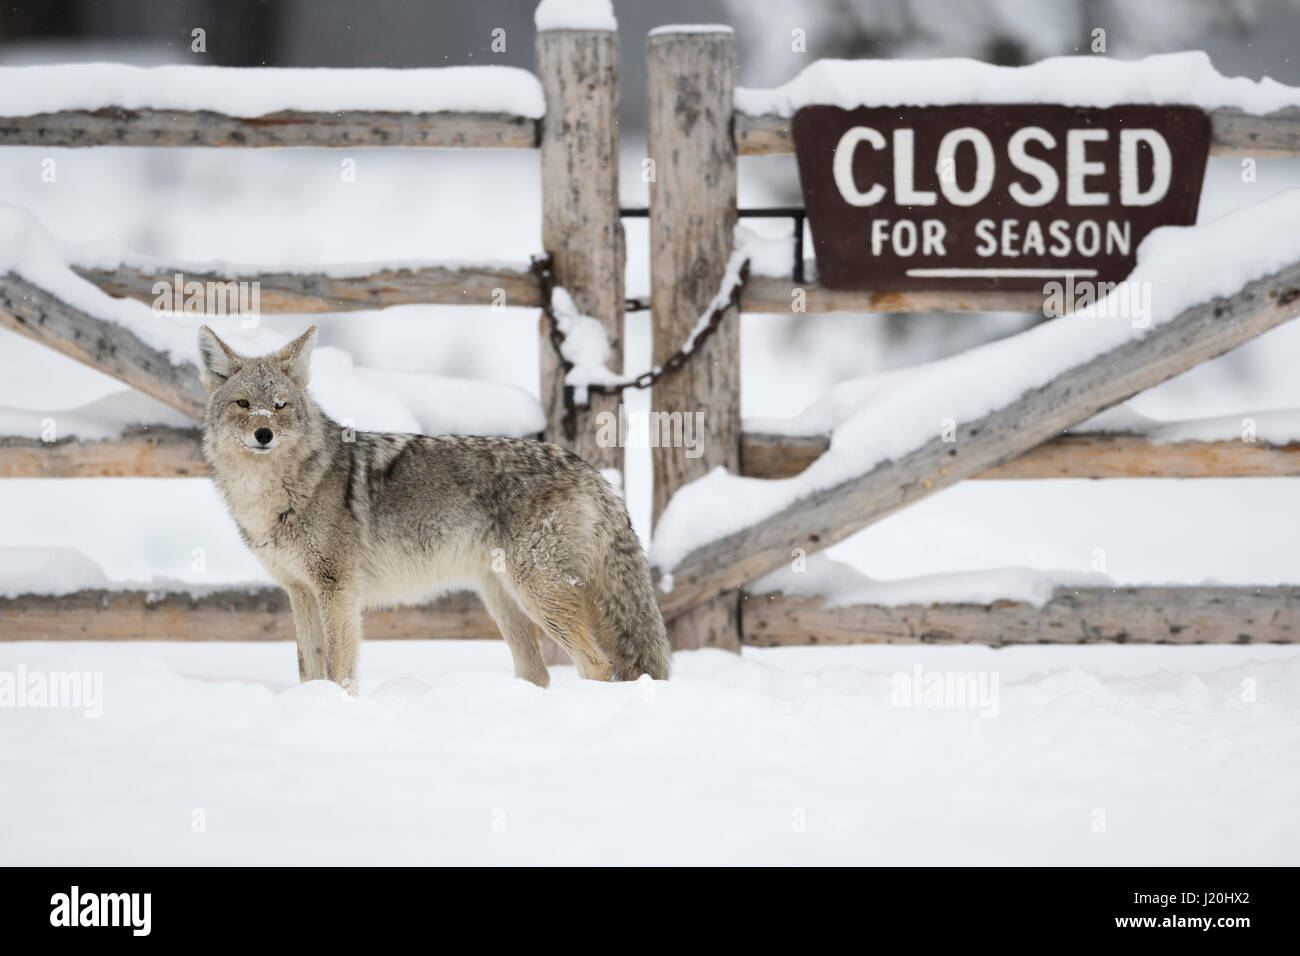 / Kojote Coyote ( Canis latrans ) de pie delante de una puerta de madera, cerrada durante la temporada de invierno, divertida situación, mucha nieve, Parque Nacional Yellowstone, ESTADOS UNIDOS. Foto de stock